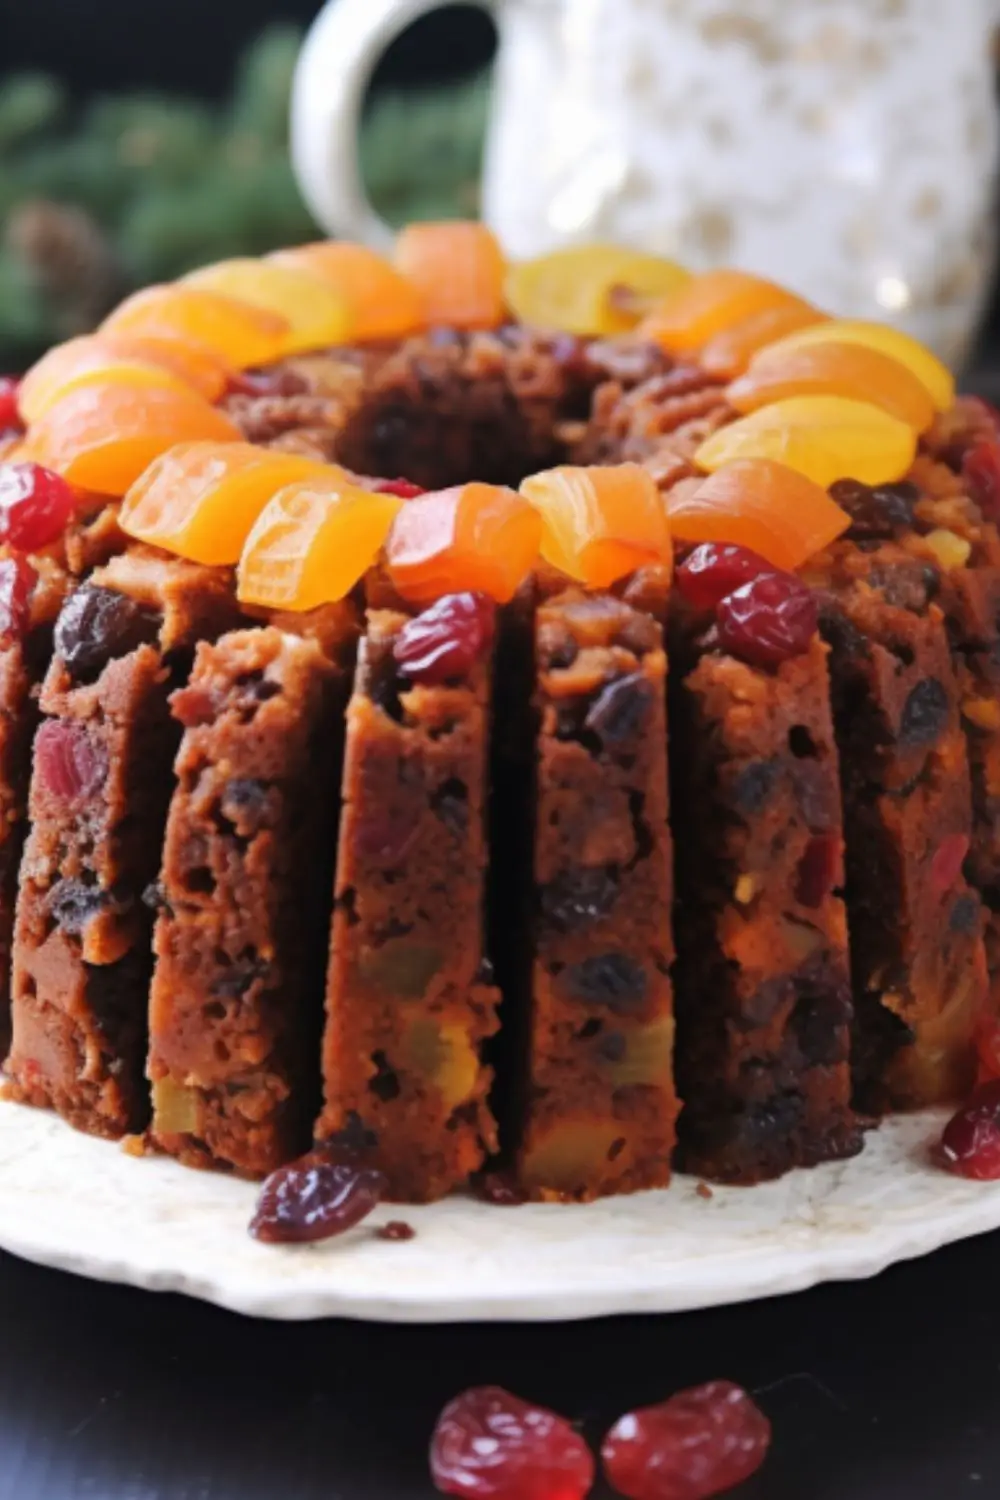 Brenda Gantt Fruit Cake Recipe